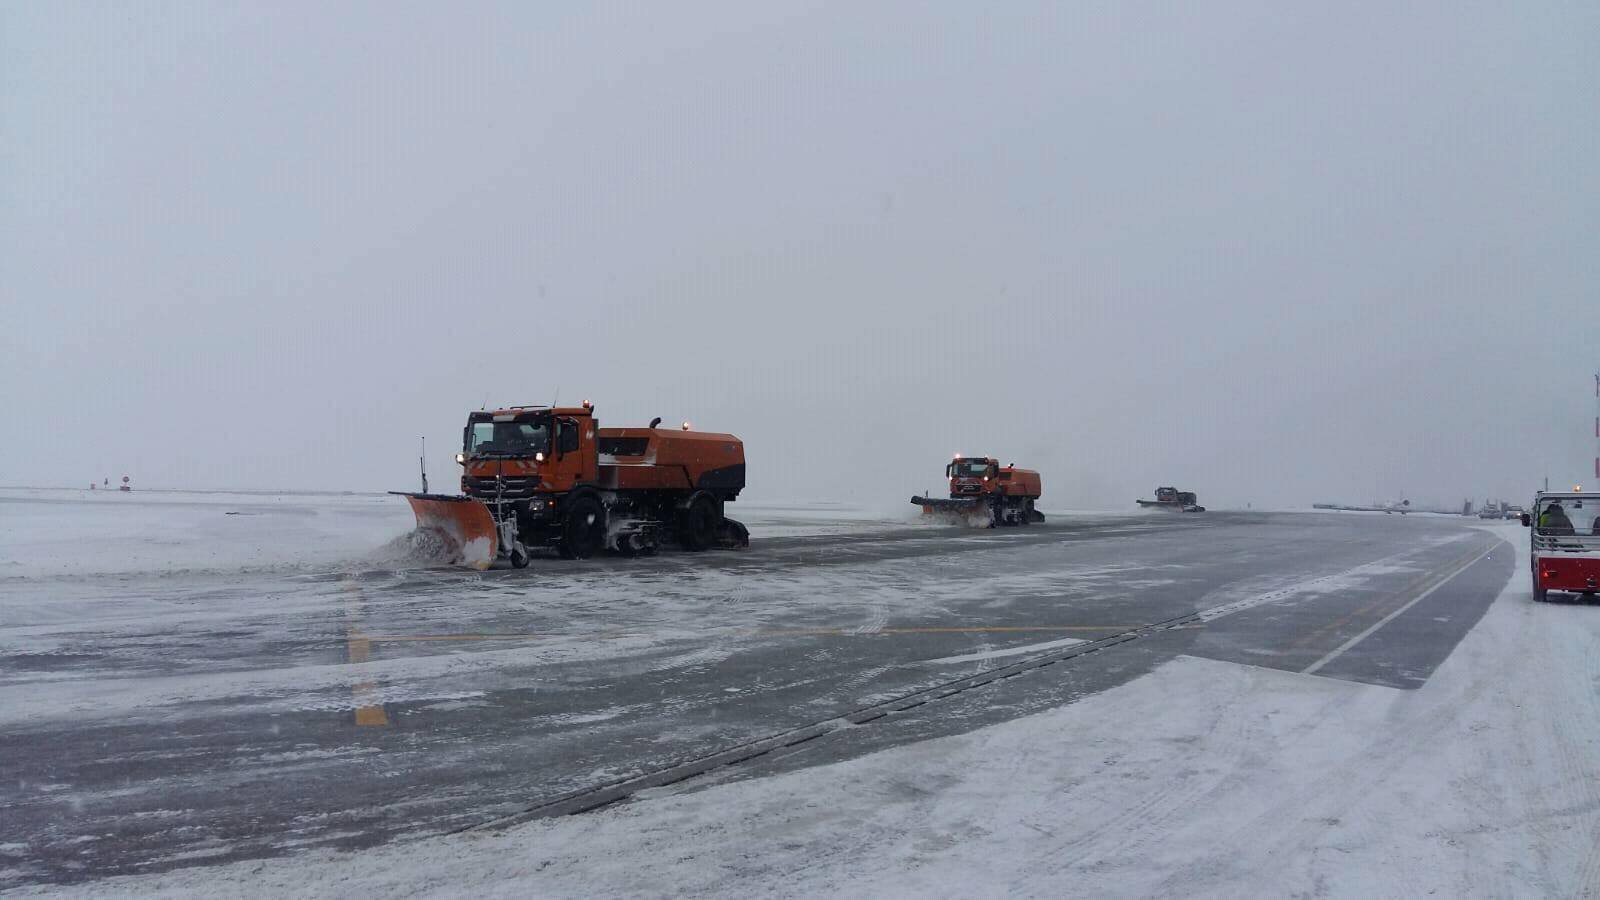  Situația la Aeroportul din Iași: nicio cursă afectată până în prezent de ninsoare